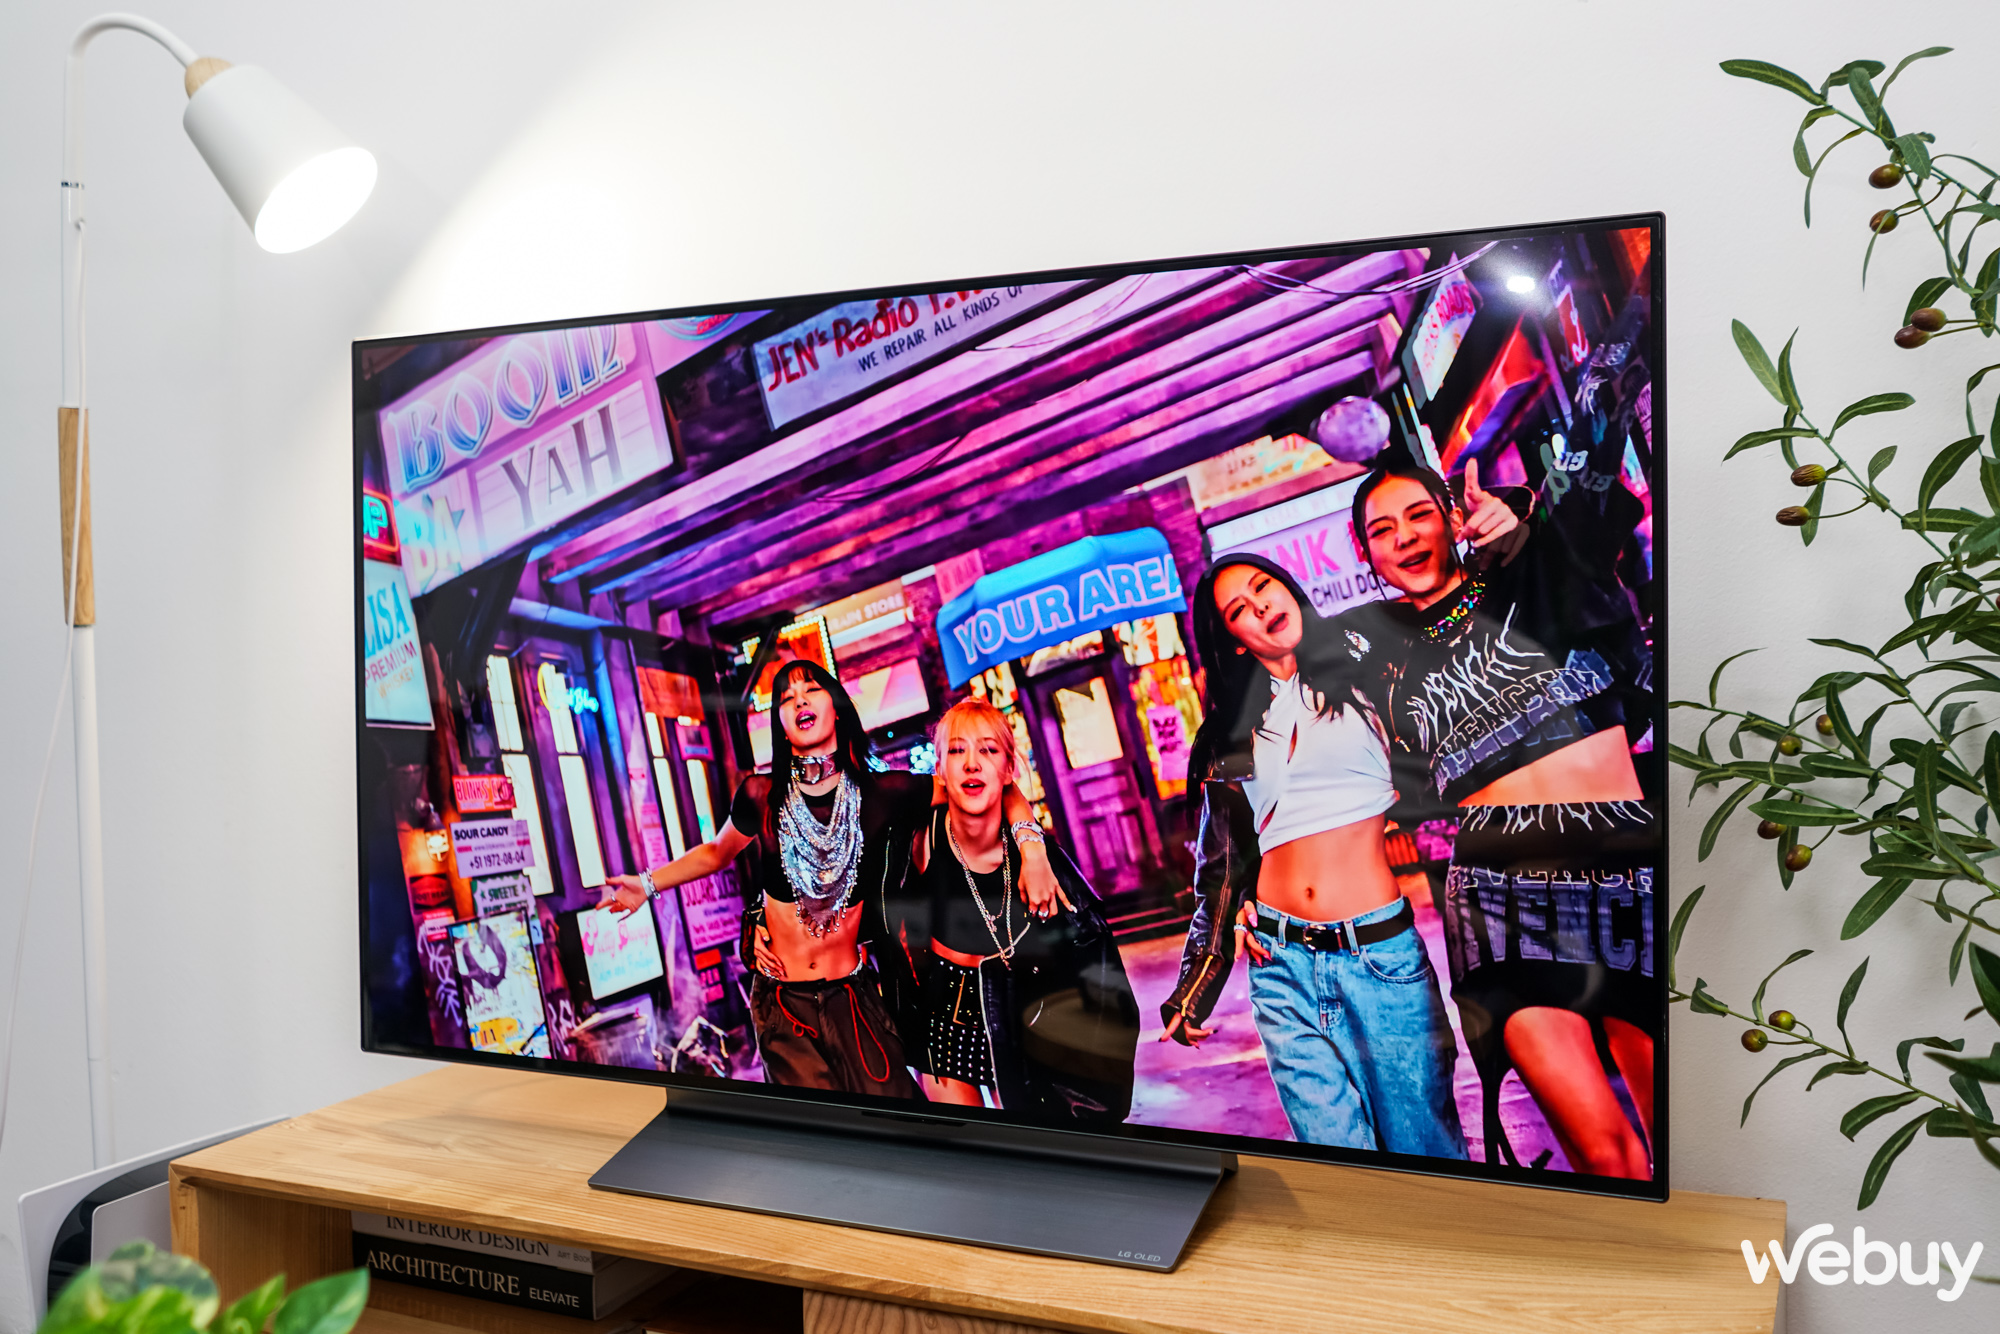 Trải nghiệm TV LG OLED evo C3 48 inch: Chỉ đơn giản là 'Ấn tượng' - Ảnh 6.